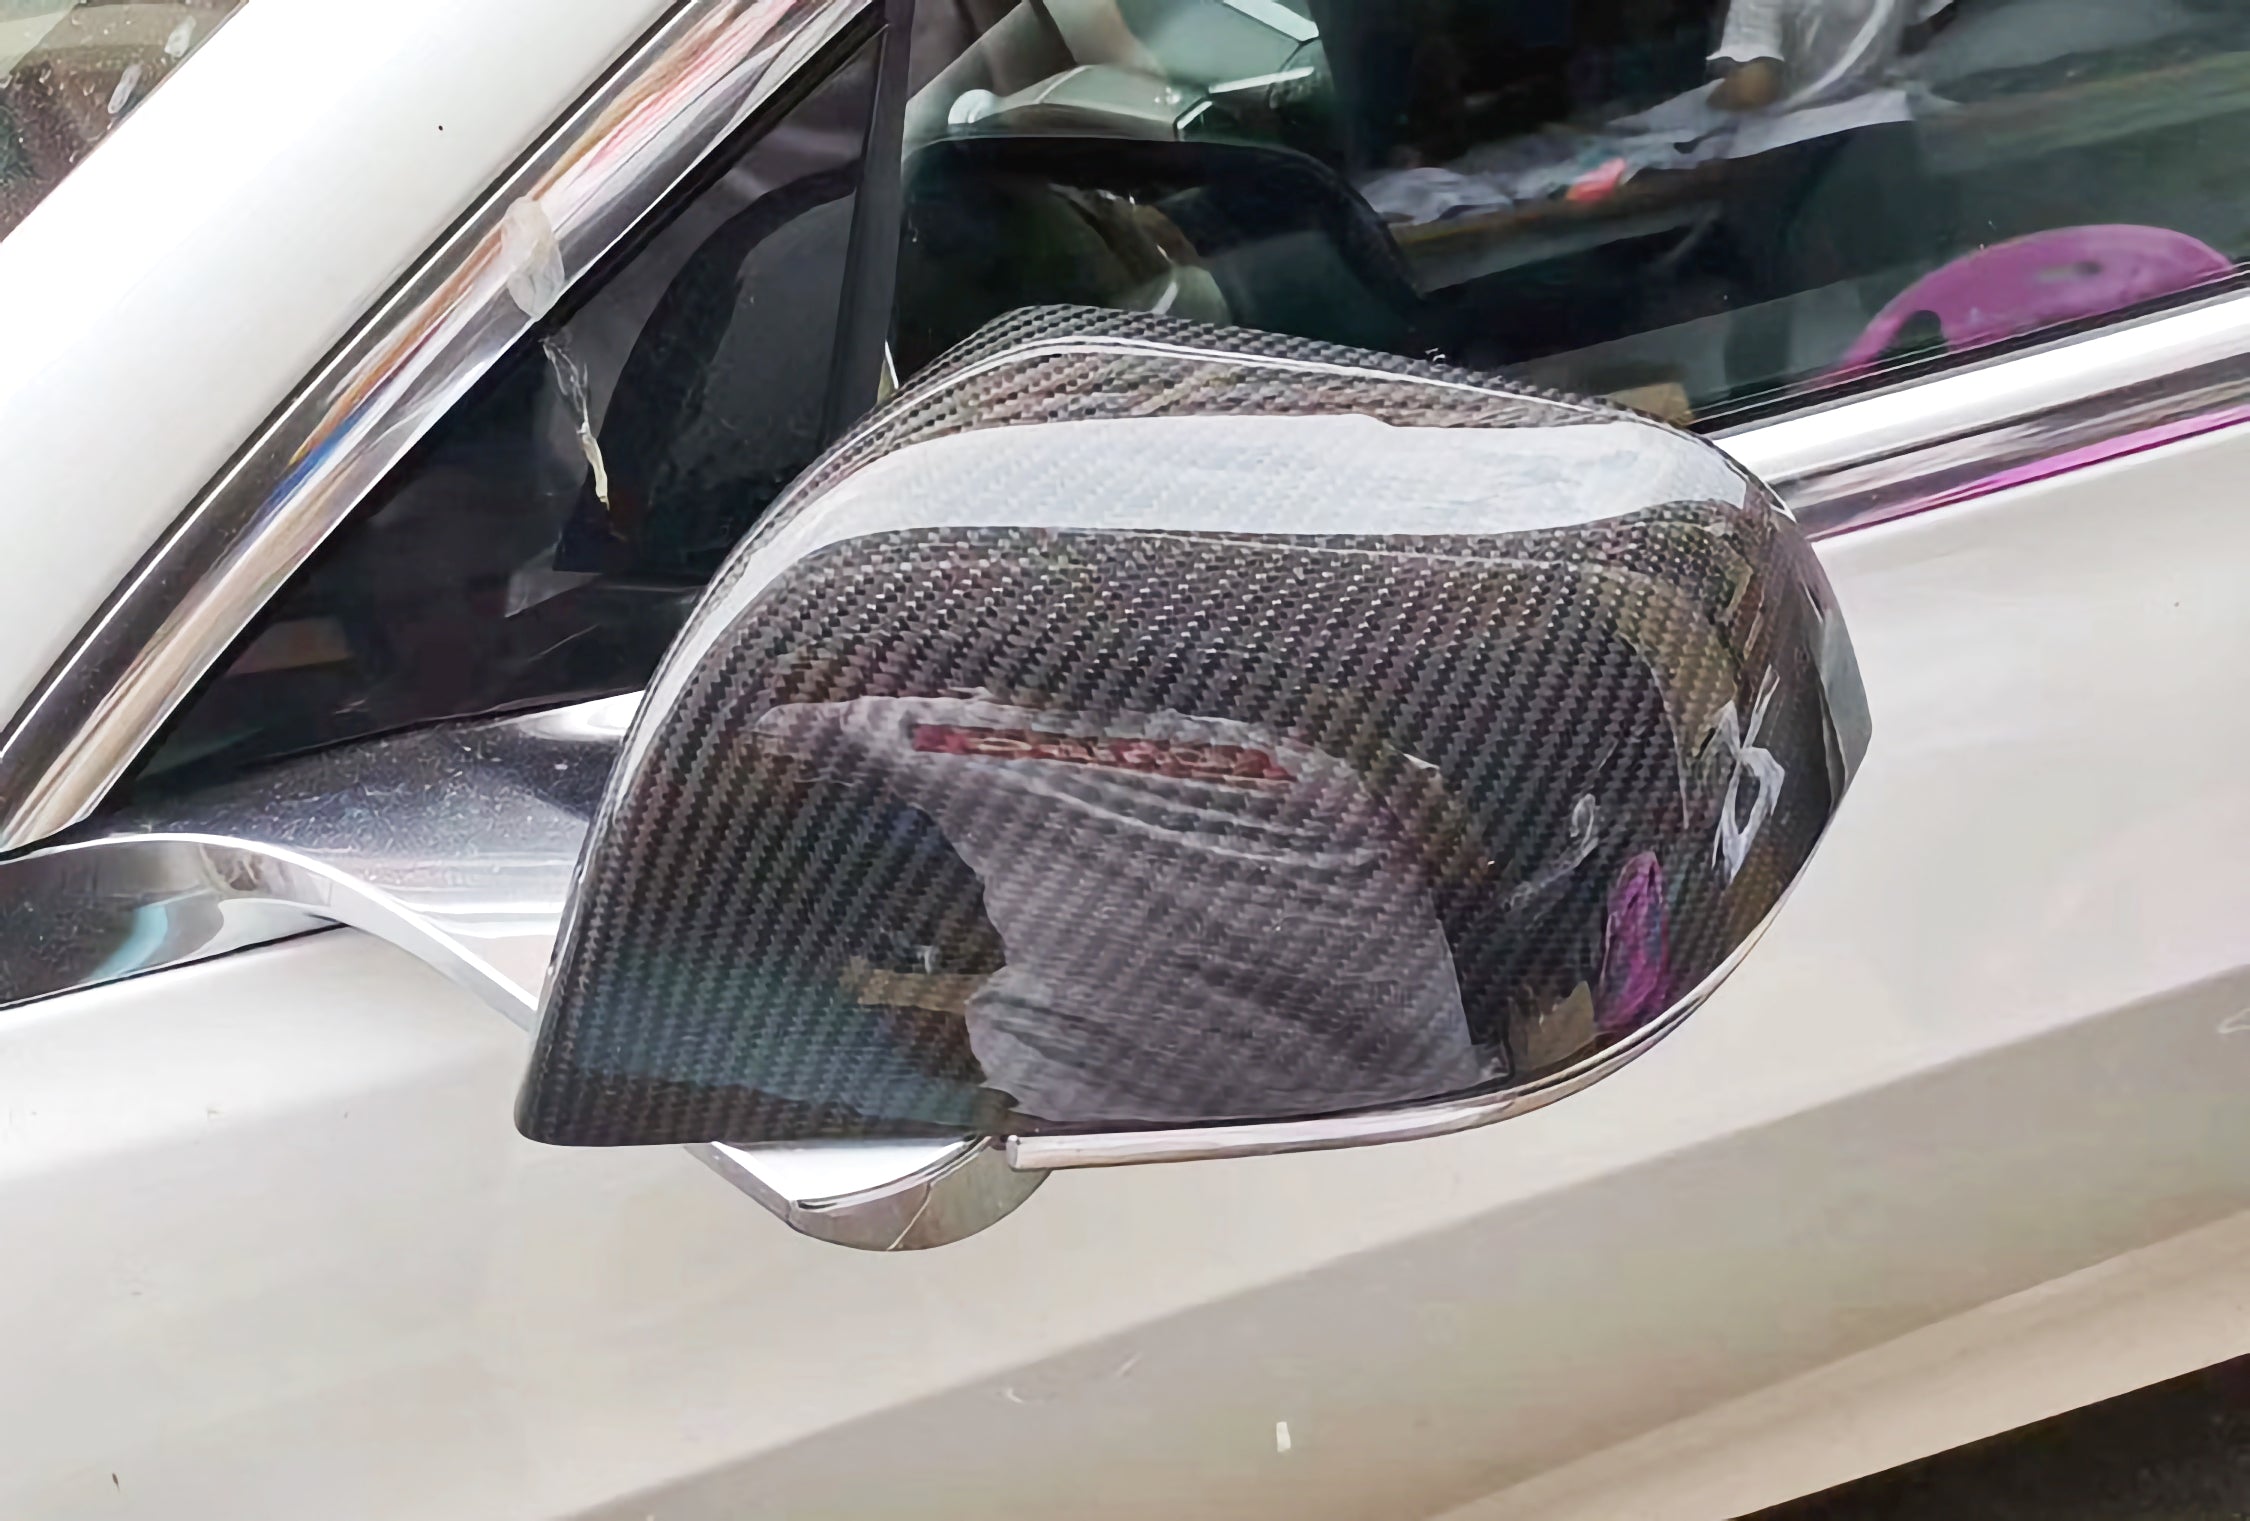 MAX CARBON Performance Aufsatz Spiegelkappen Mirror Cover für Tesla Model 3